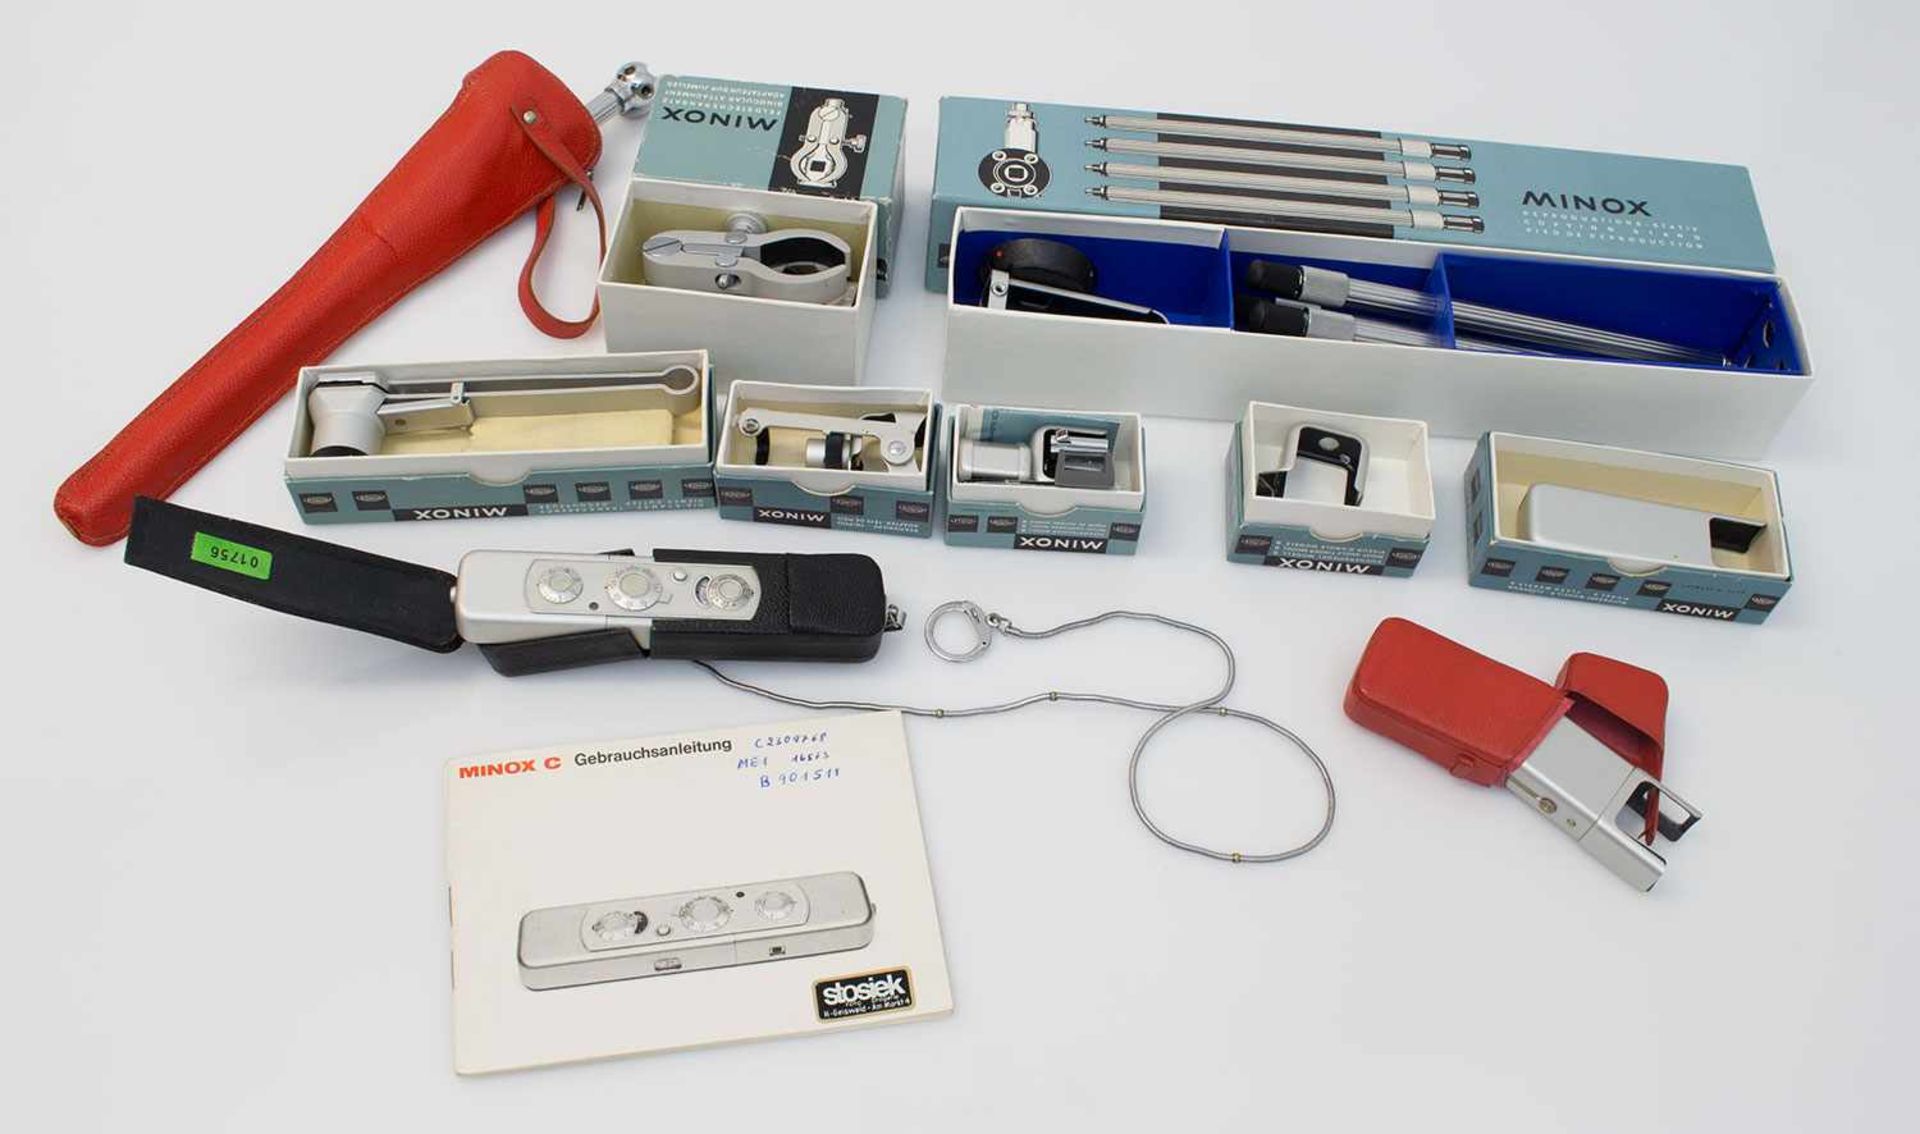 Agentenkamera Minox C (Chrom), Minox GmbH Wetzlar 1969, Complan Objektiv, zahlreiches unbenutztes